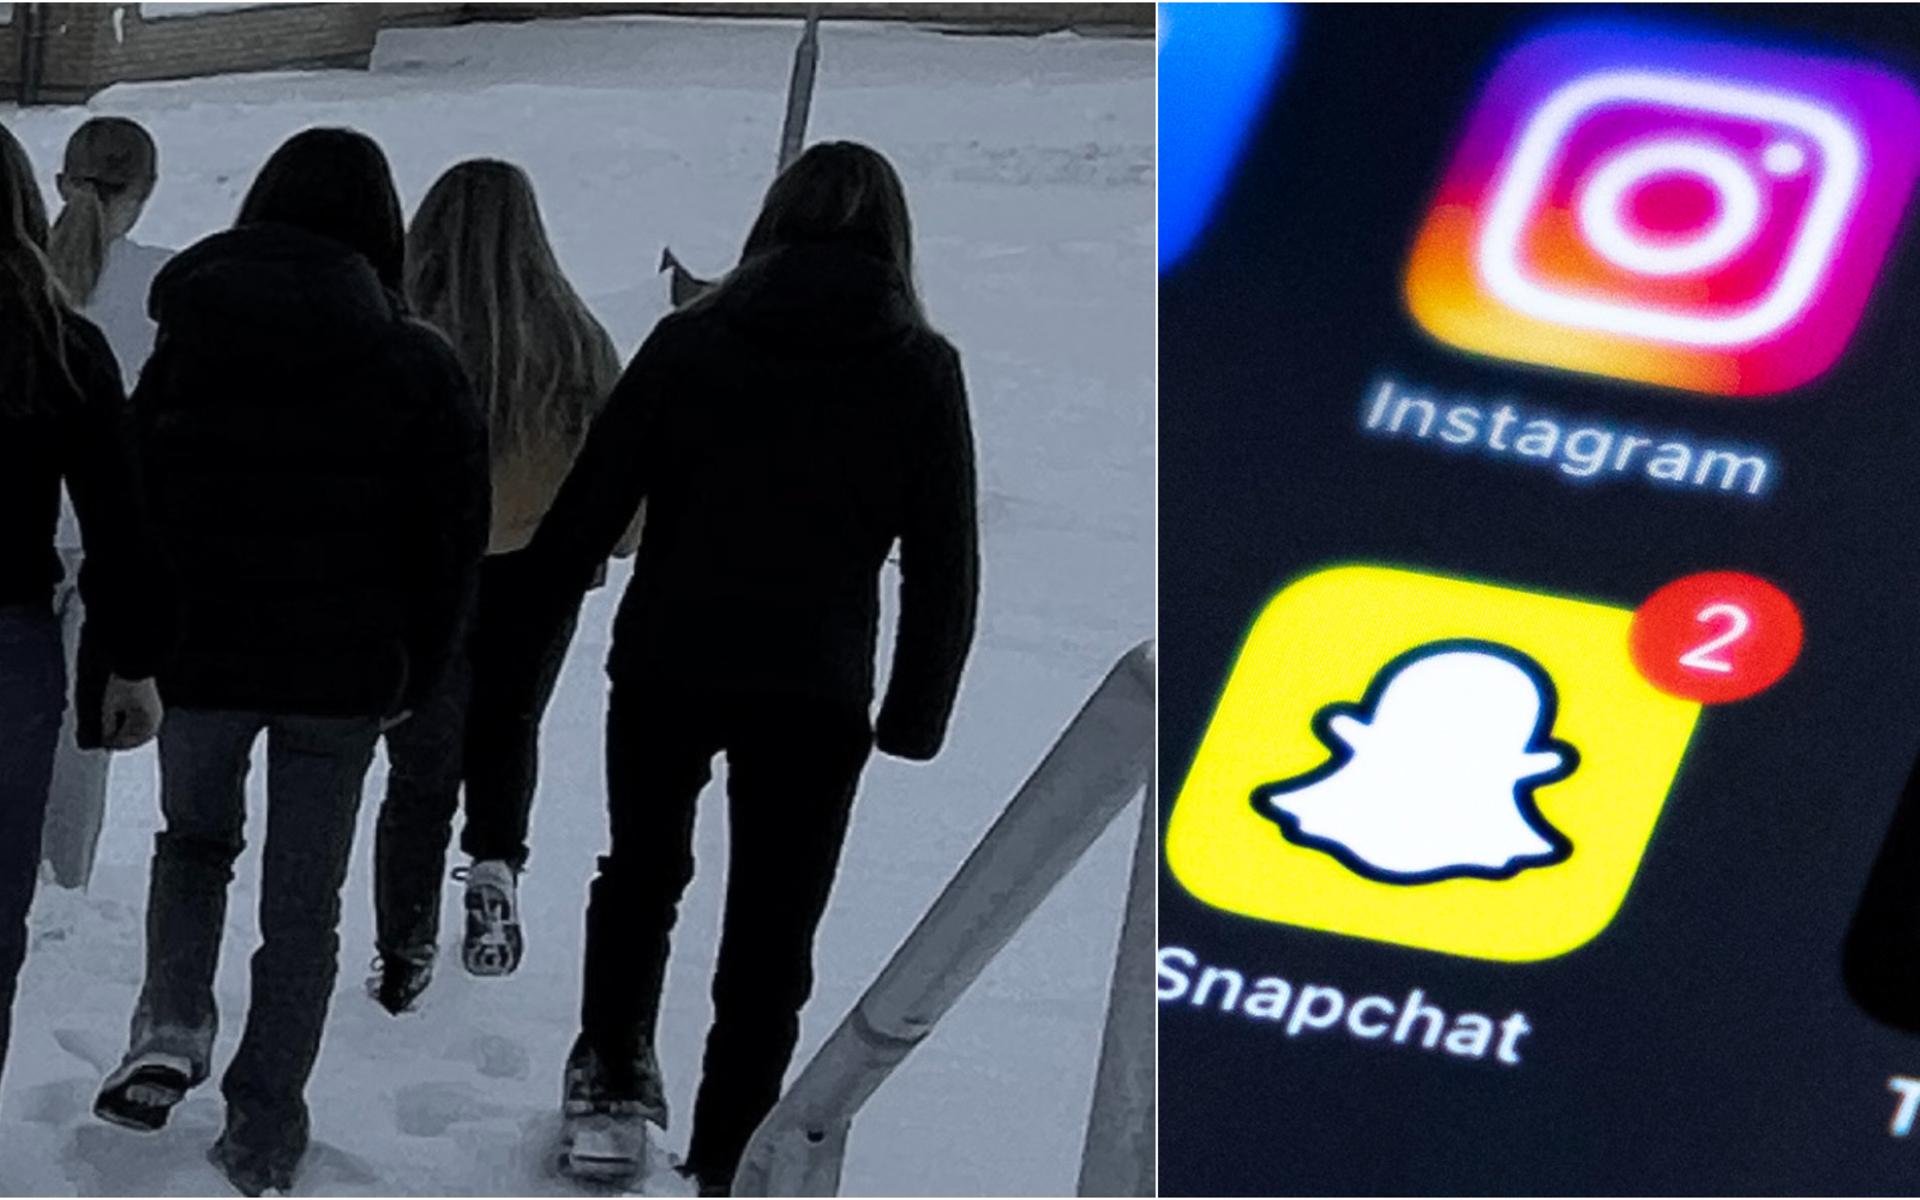 Många unga utsätts för kränkningar på nätet, särskilt på Snapchat är det svårt att bevisa vad man utsatts för. 